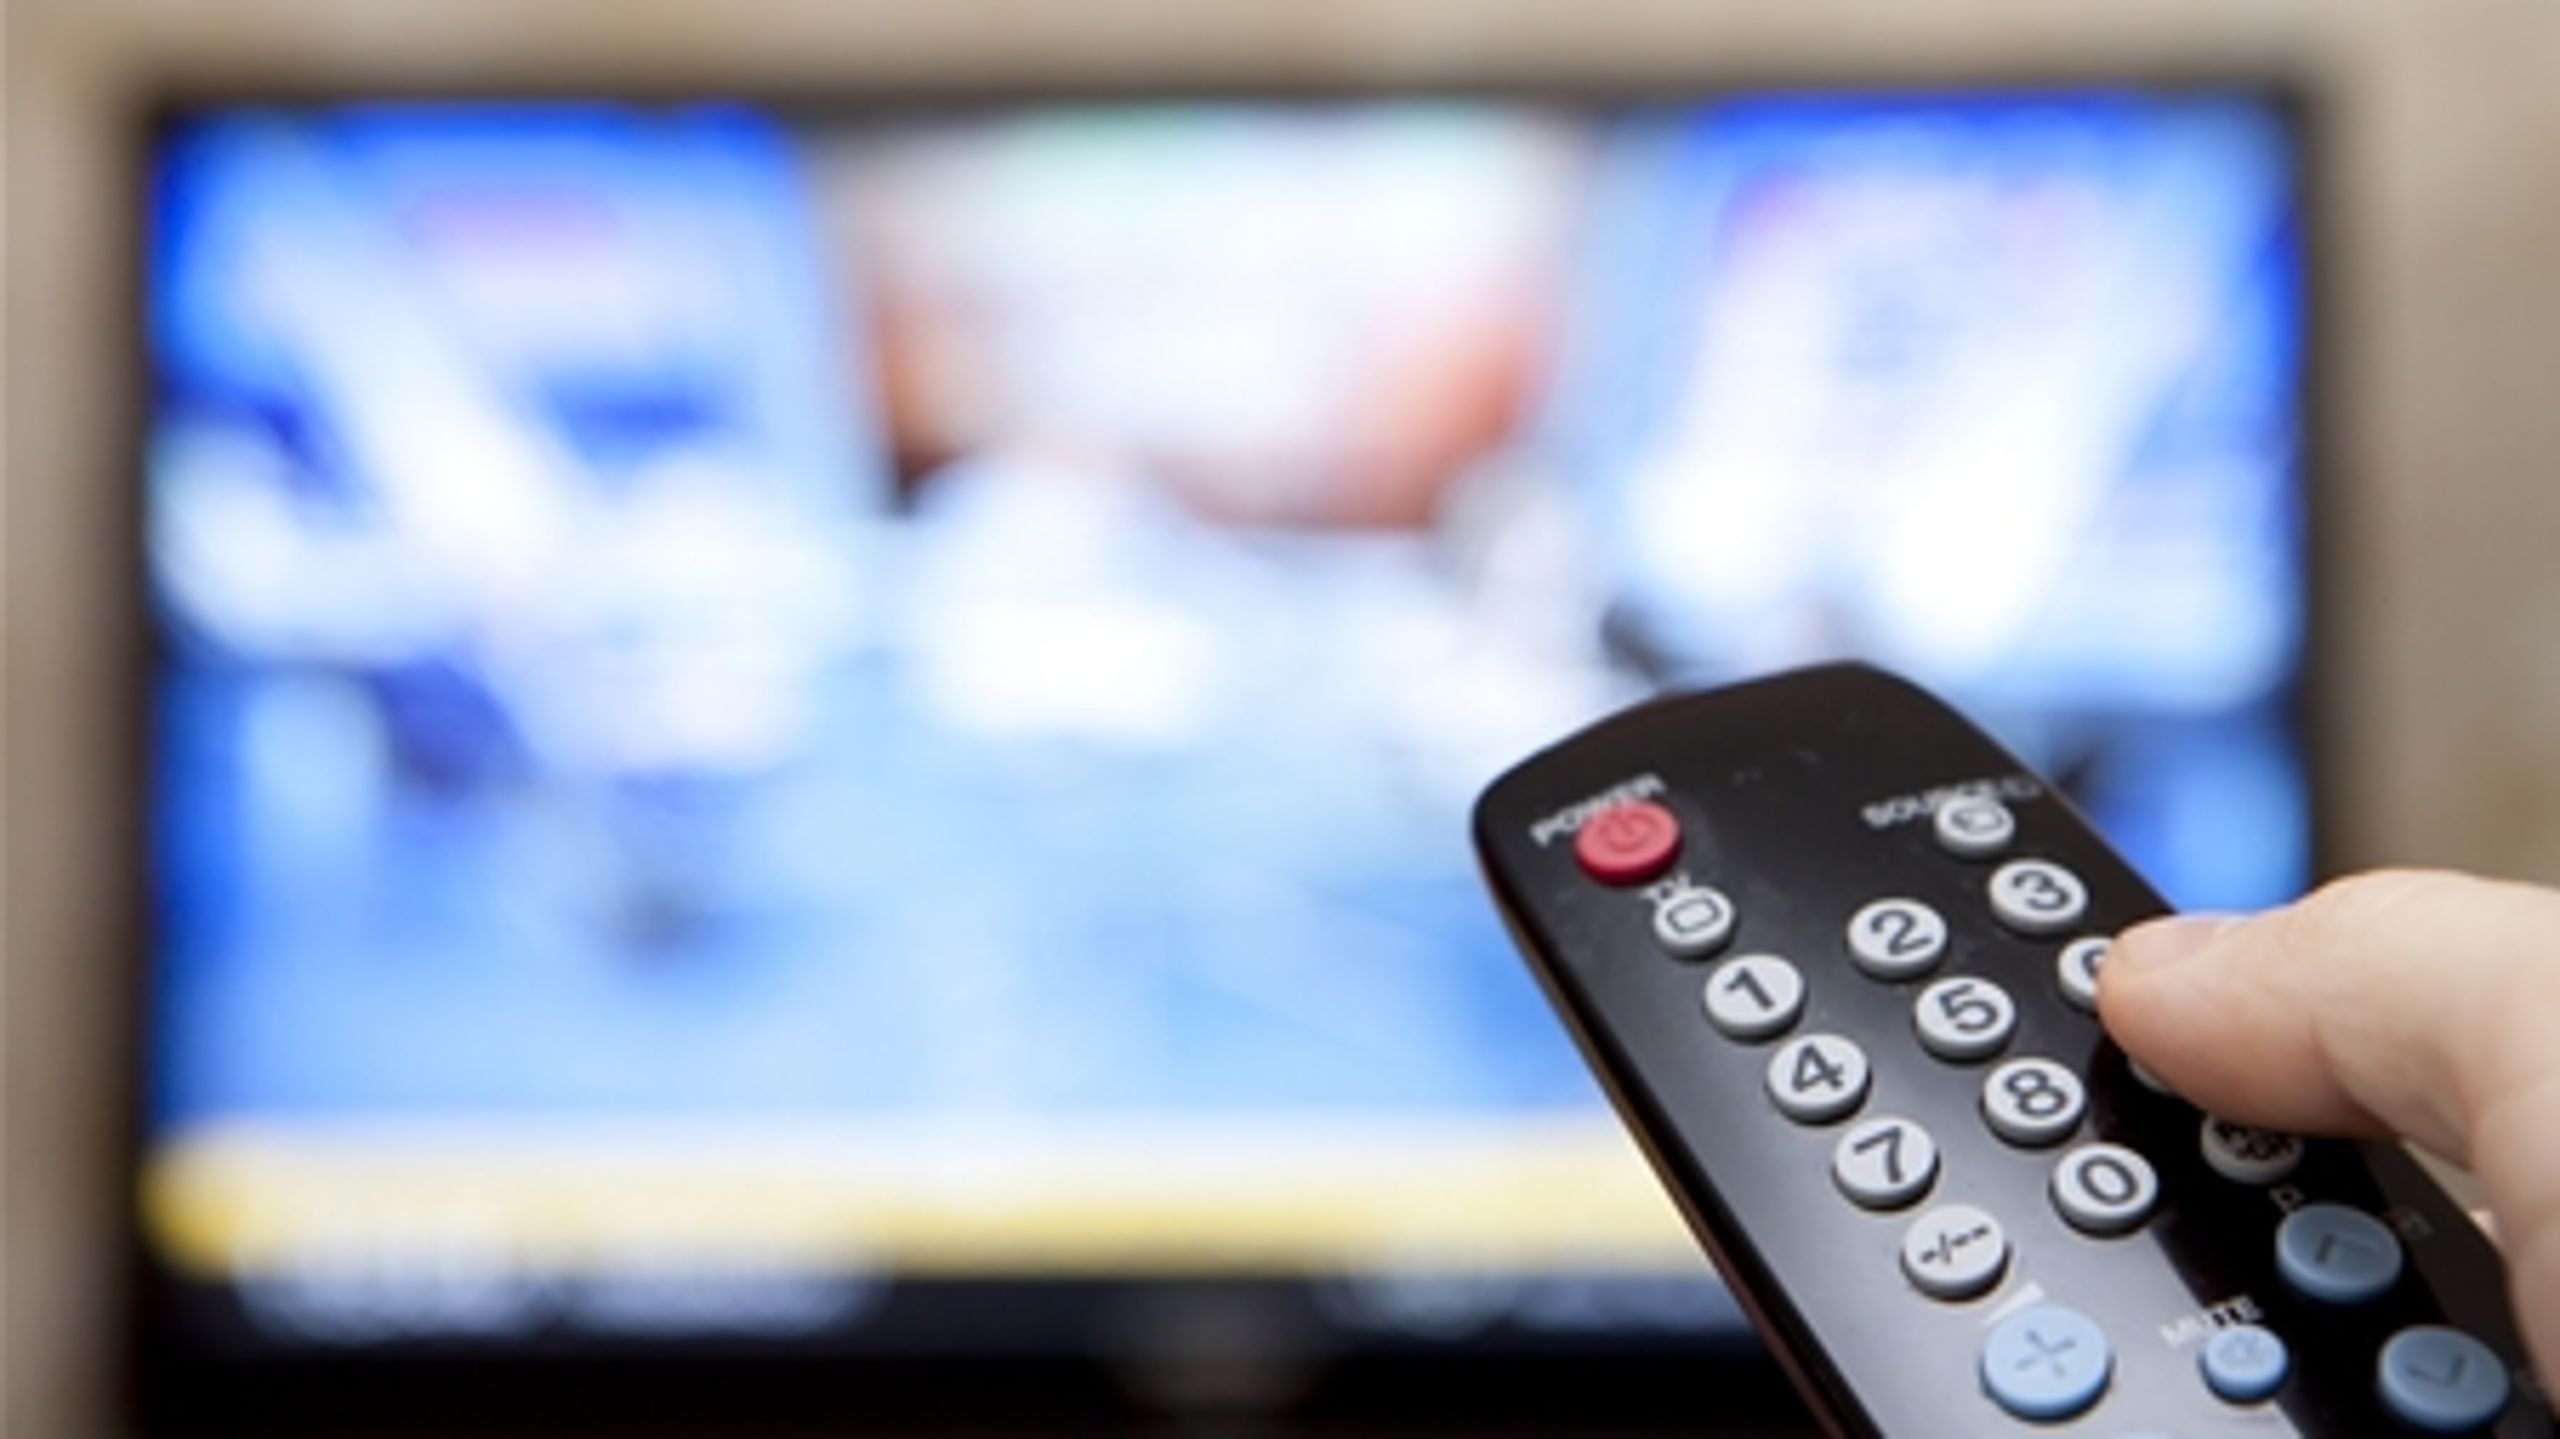 SF, Dansk Folkeparti og Enhedslisten kræver nu, at TV 2 ikke længere kan få lov til at hæve abonnementsprisen, som de vil.